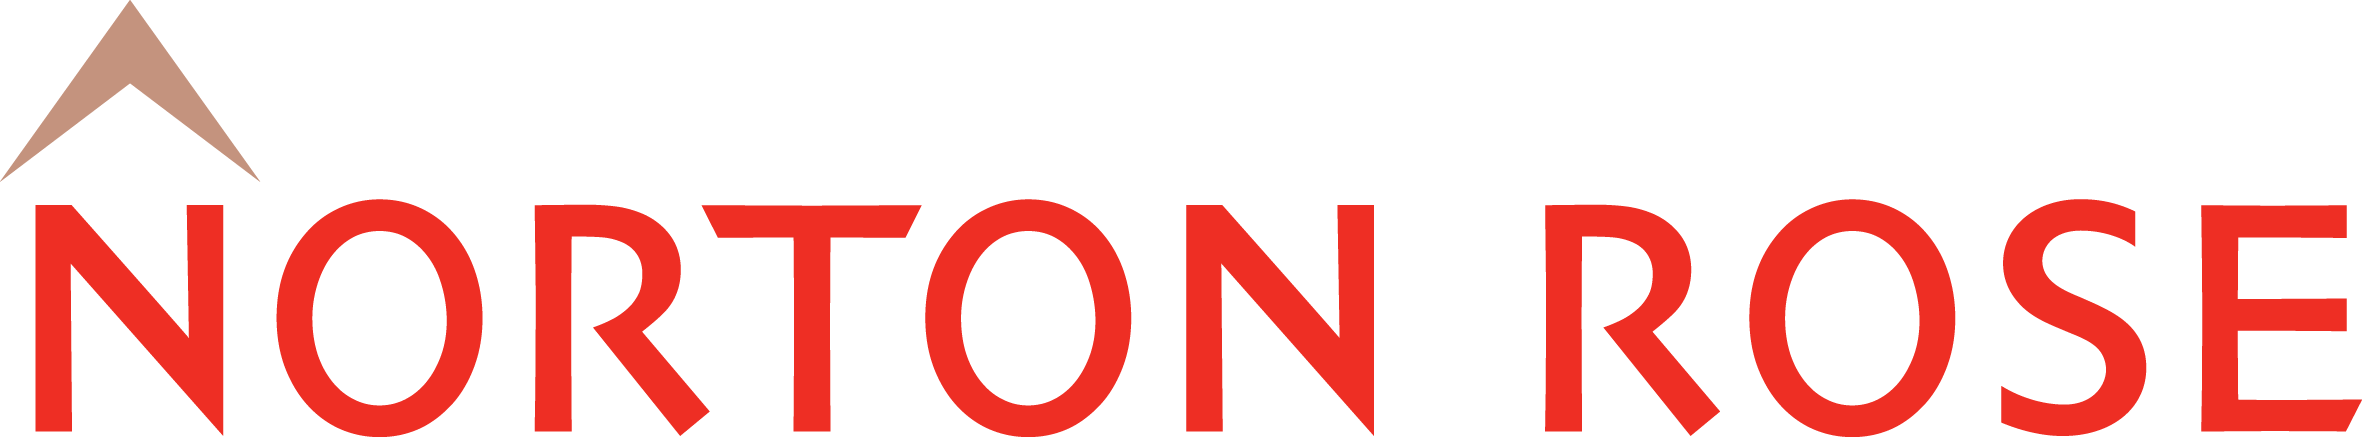 Norton Rose Logo Highres - Norton Rose Fulbright Logo (2362x437)